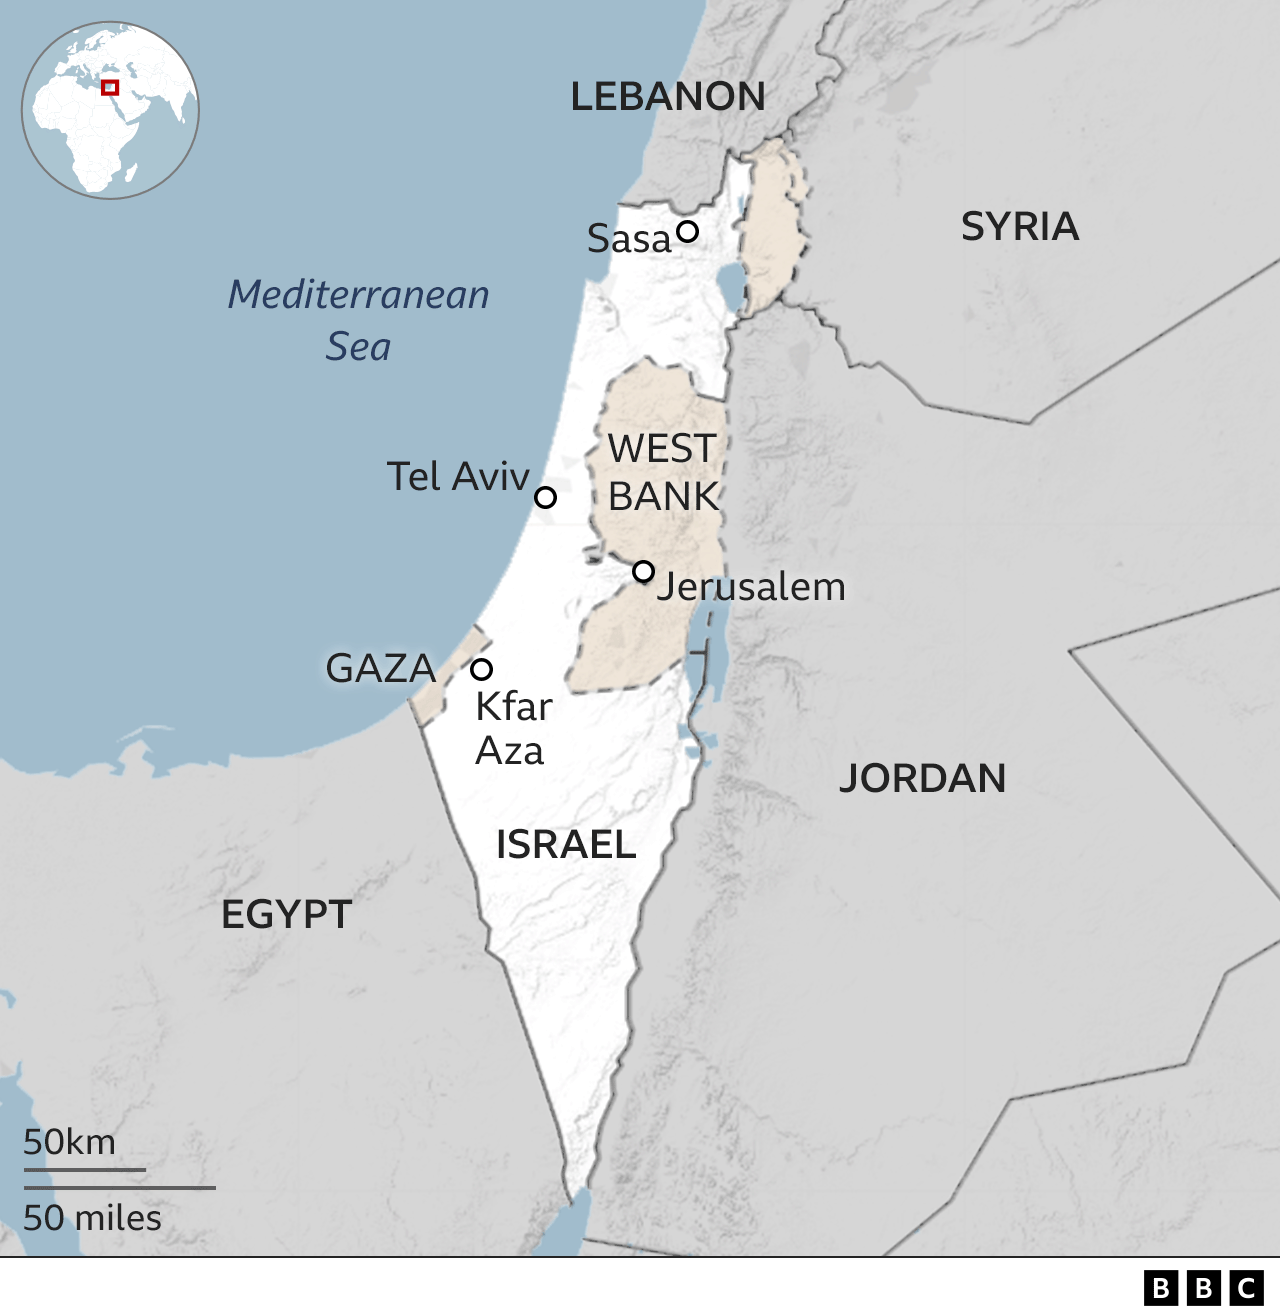 BBC map shows Kfar Aza on Israel's southern border with Gaza and Sasa on the northern border with Lebanon